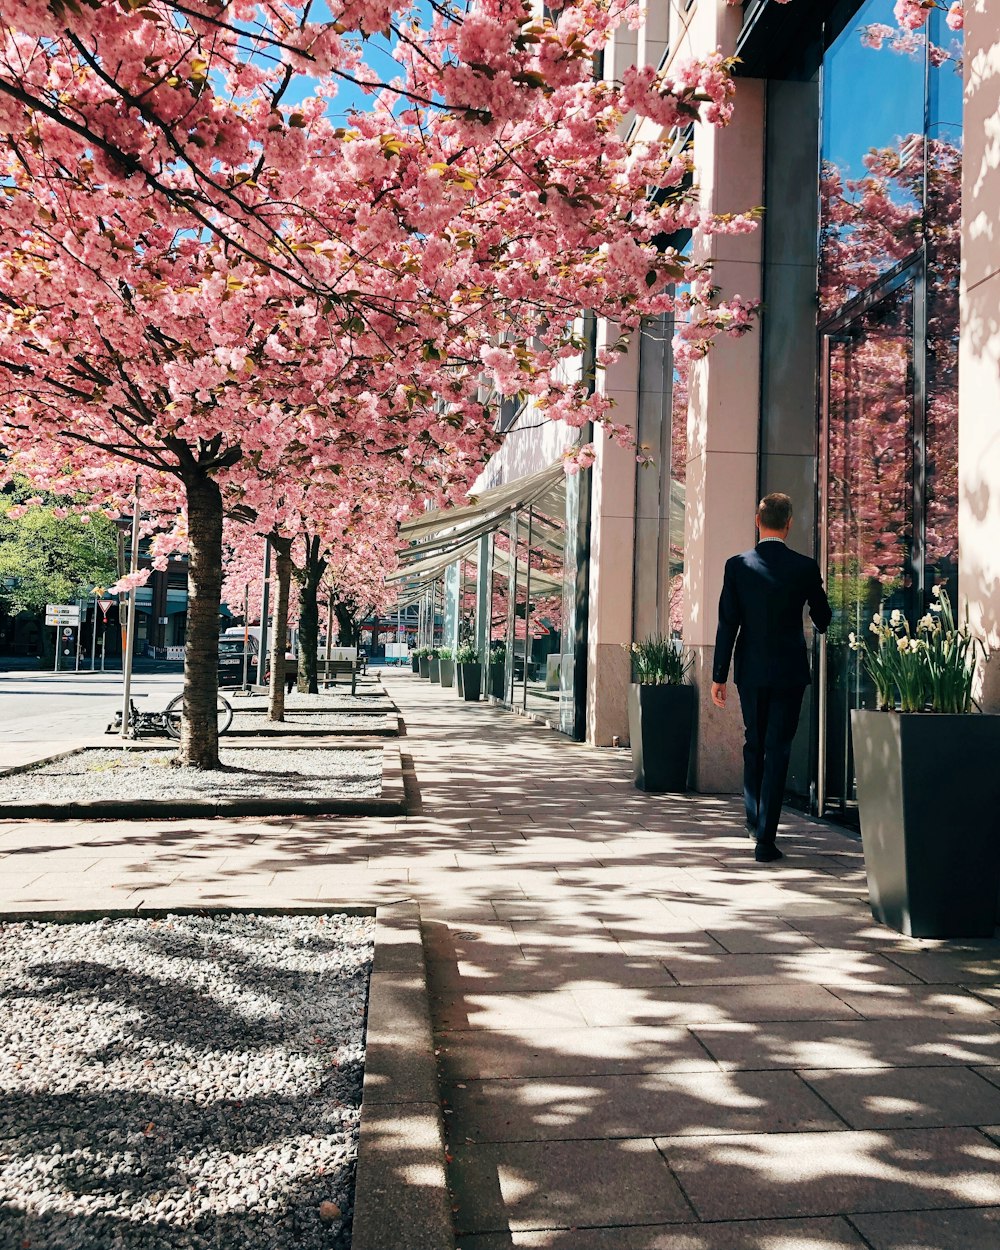 man walking near pink leafed tree